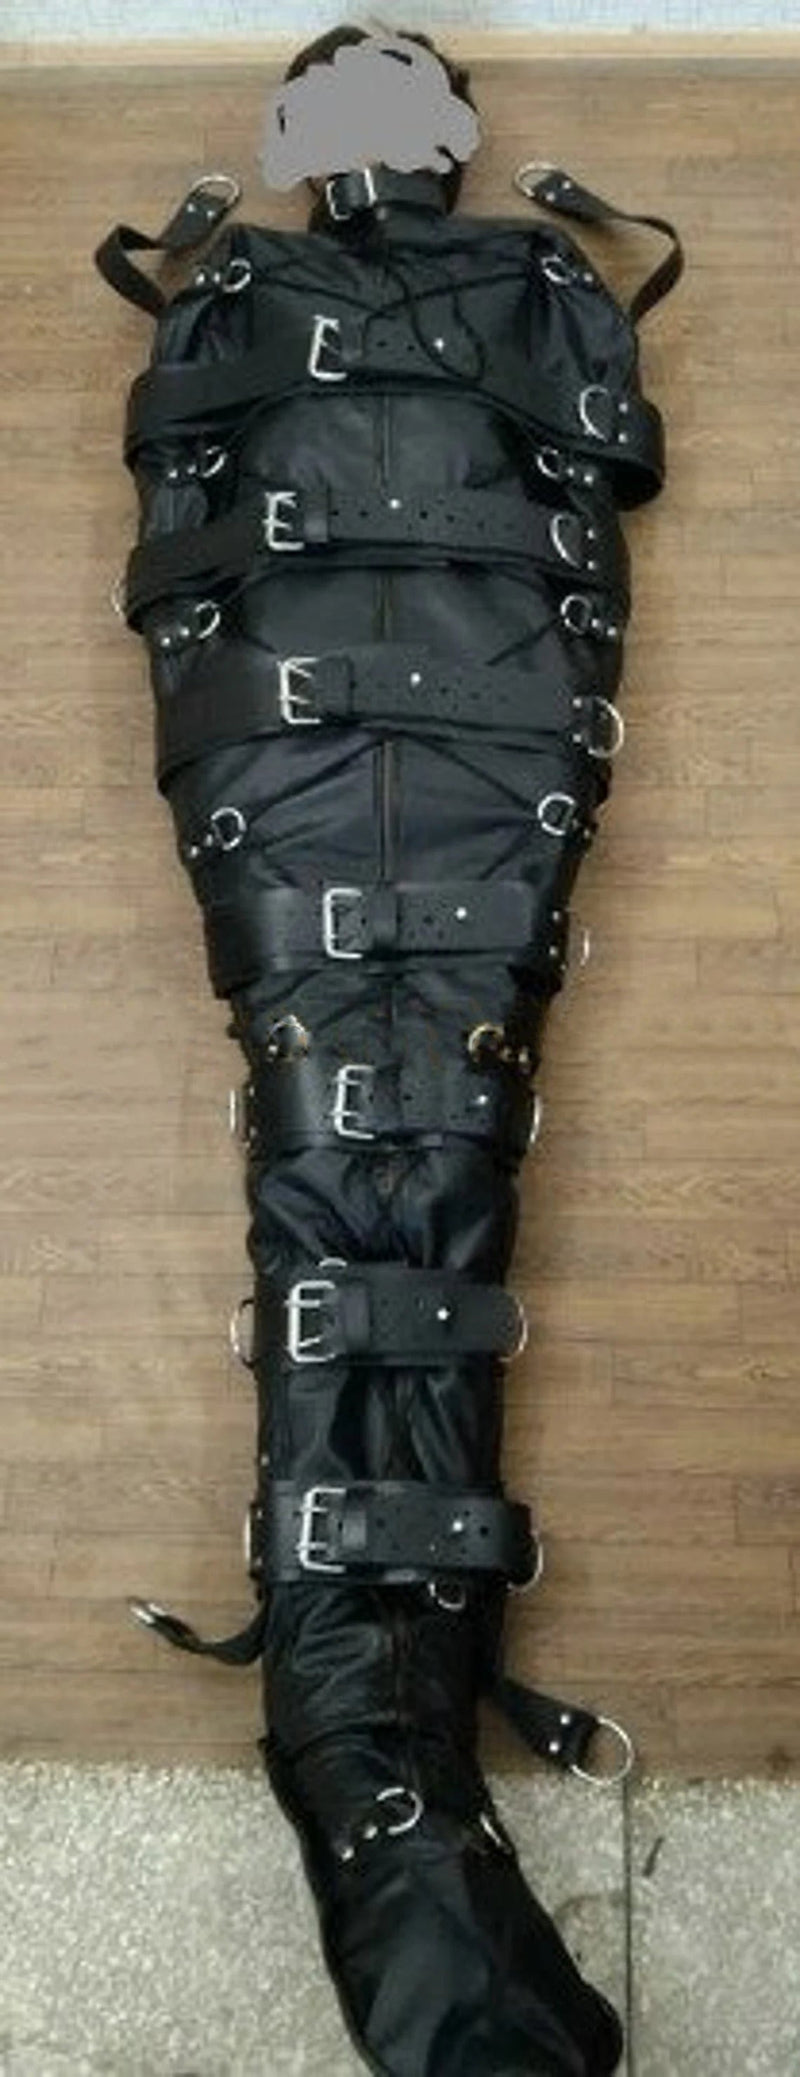 leather bodybag, leather sleepsack, leather sleep sack, leather bondage body bag, leather bondage sleep sack, self bondage sleep sack, leather sleep sack